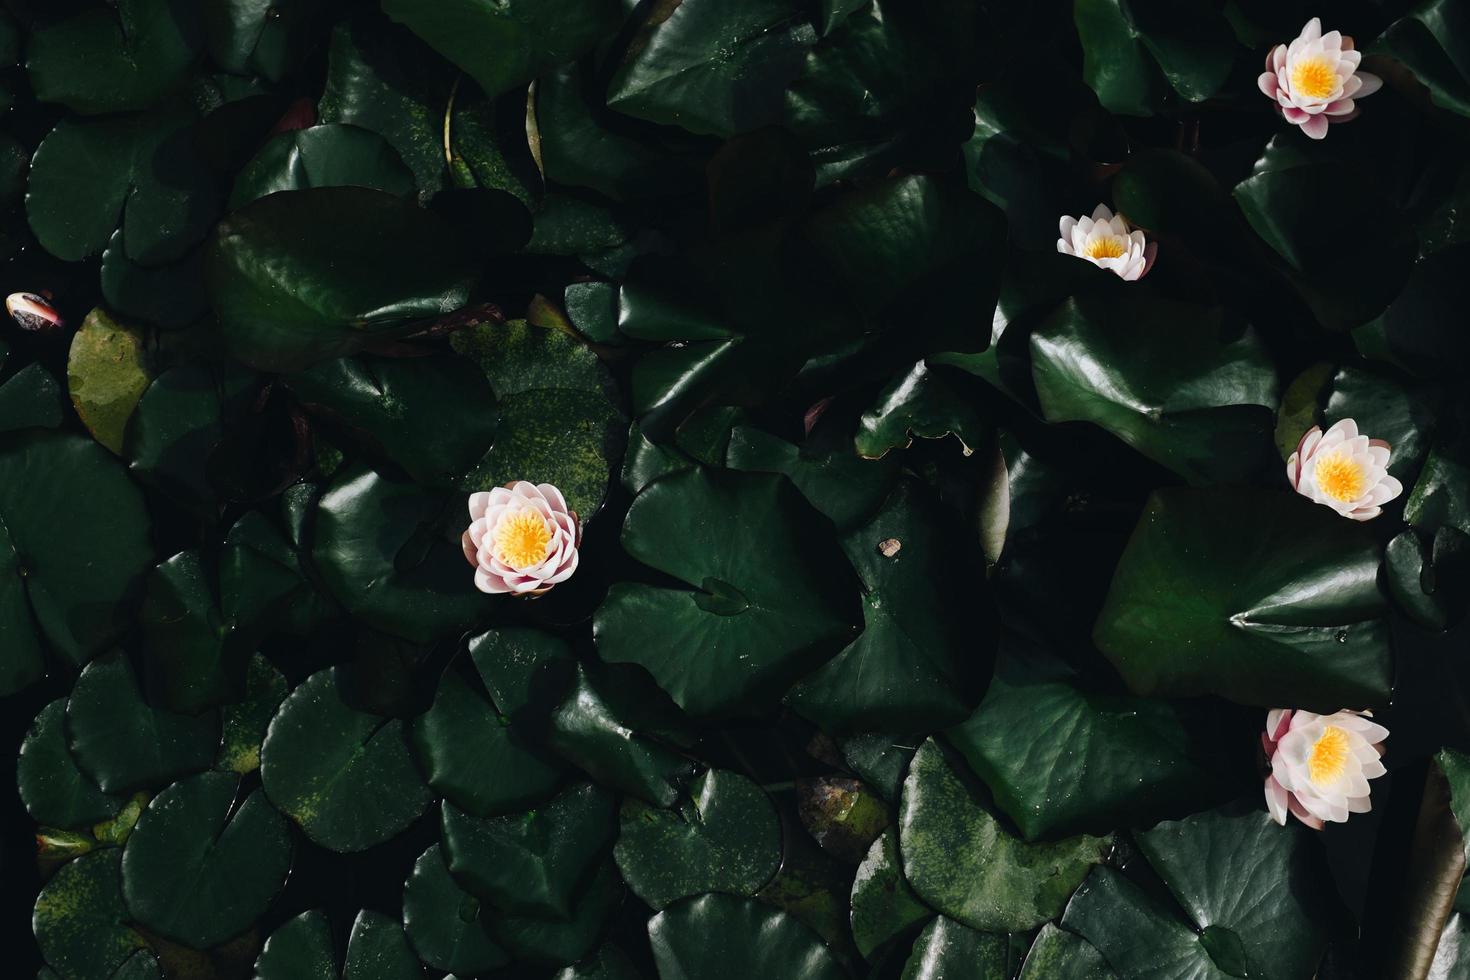 witte lotusbloem foto